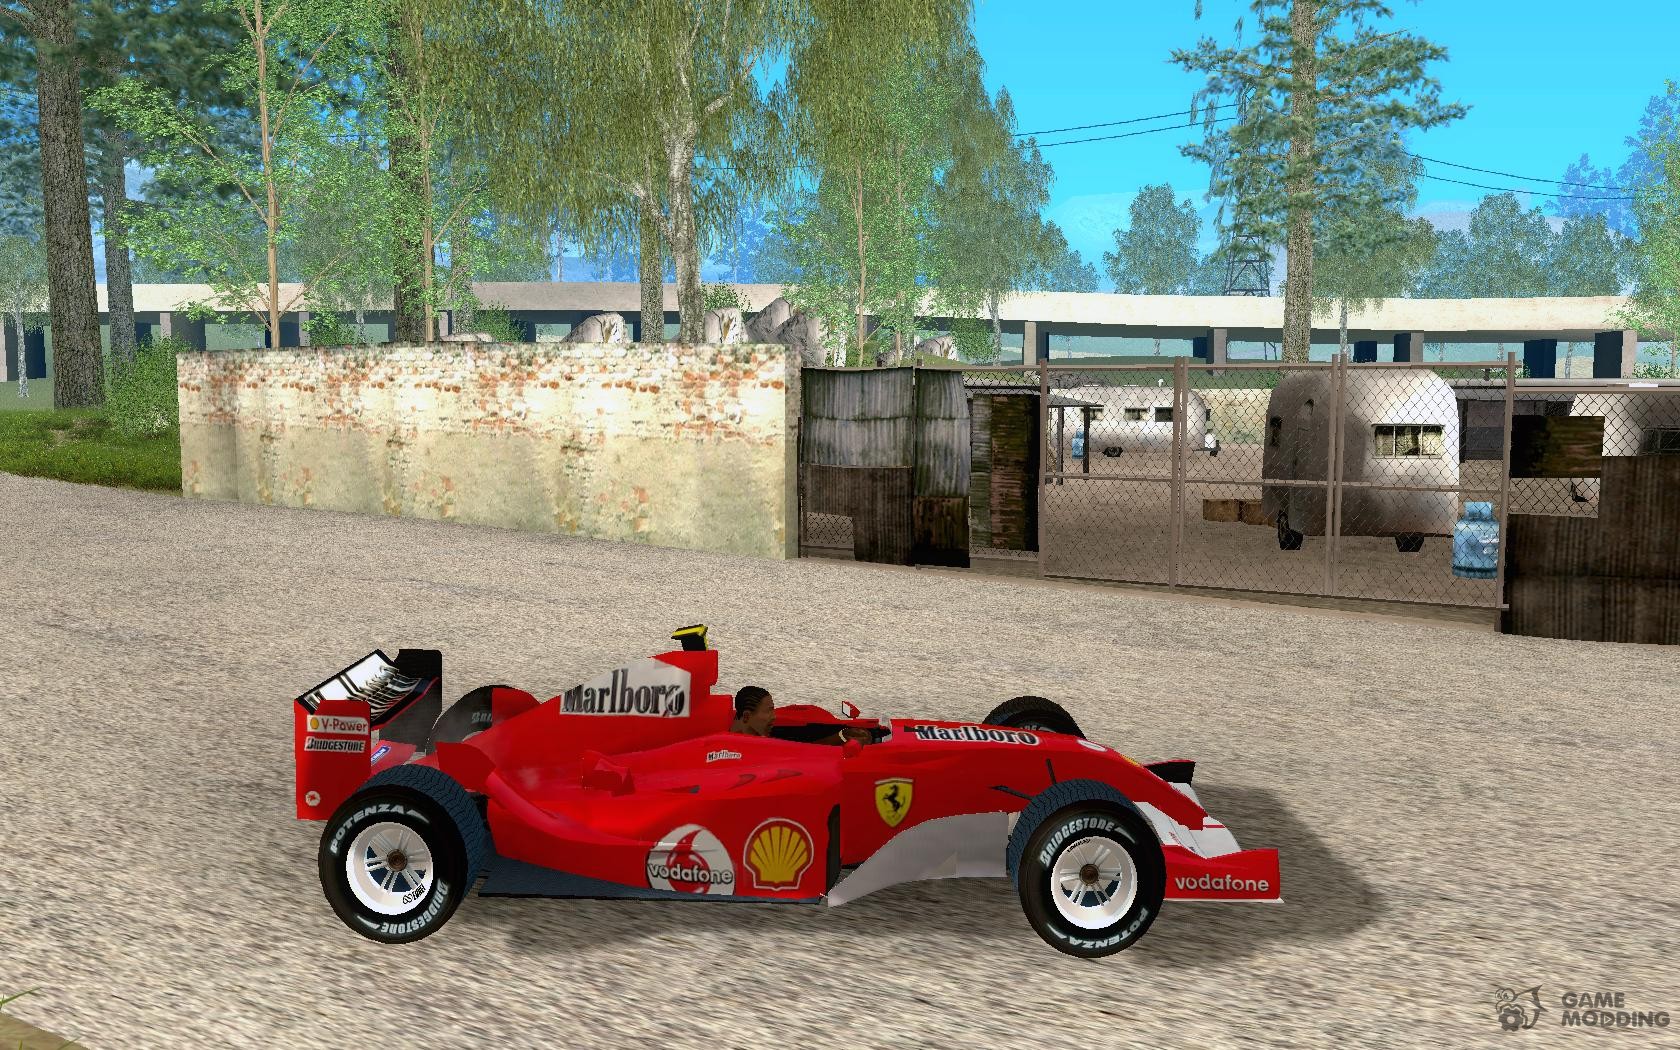 Ferrari F1 para GTA San Andreas